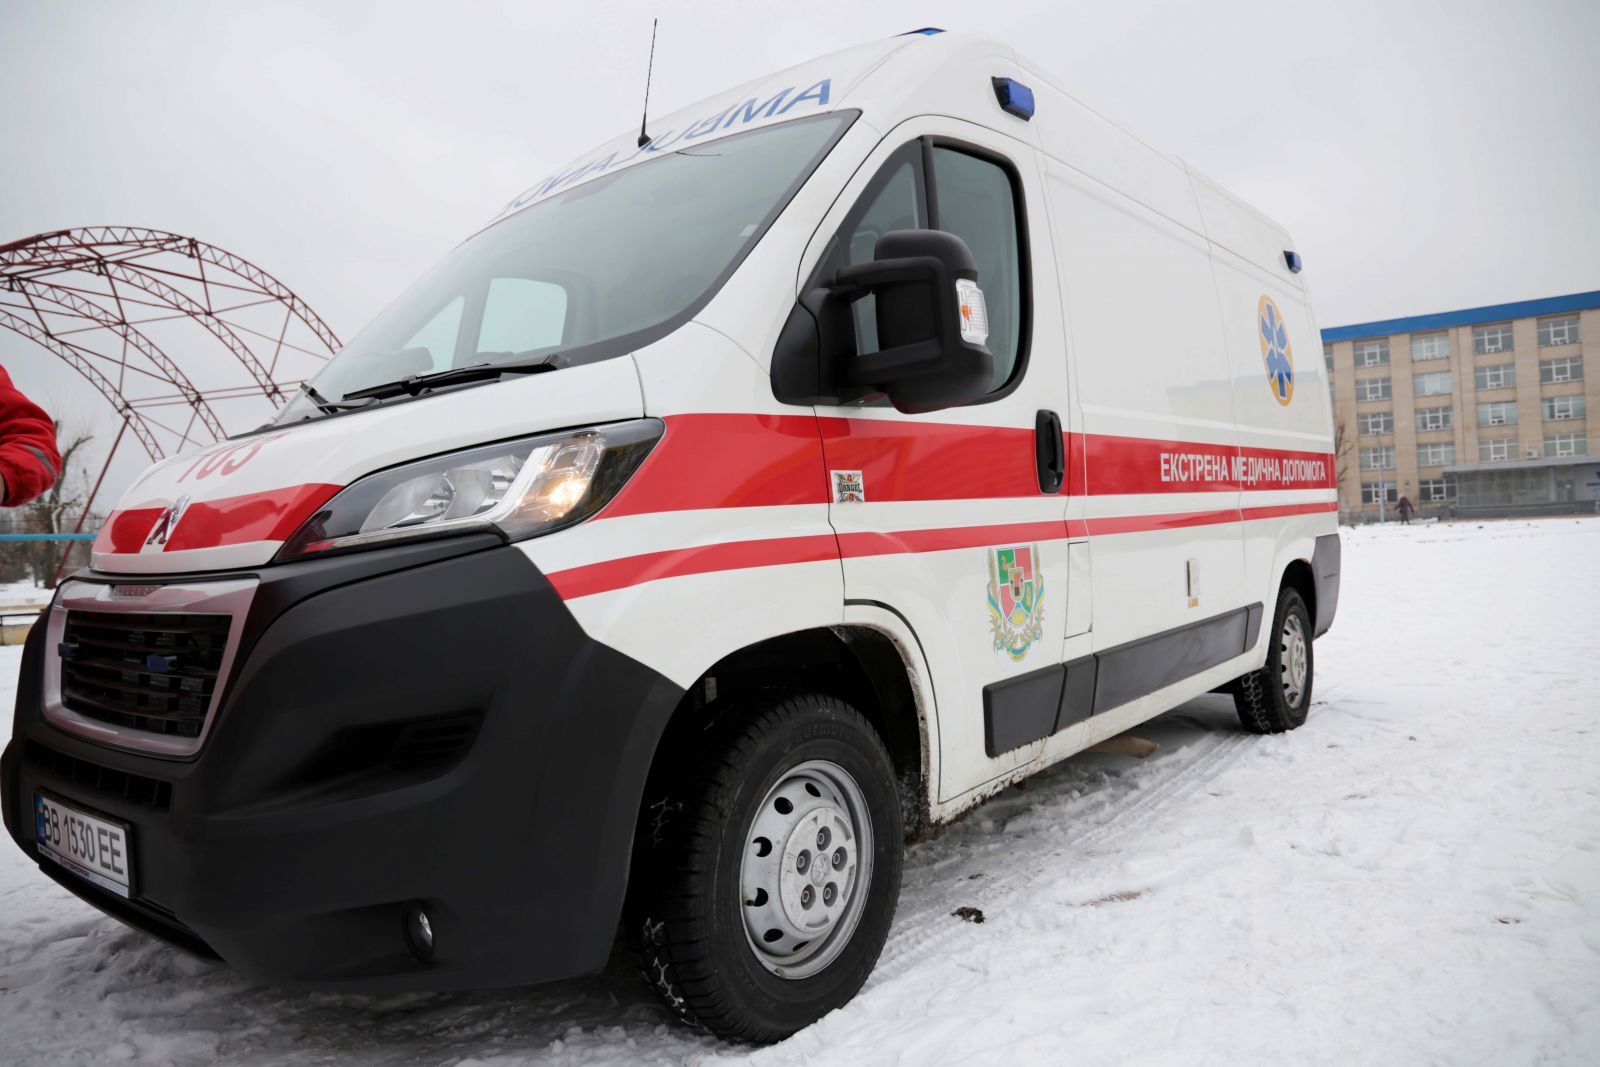 Как связаться с полицией, спасателями и волонтерами в Харькове